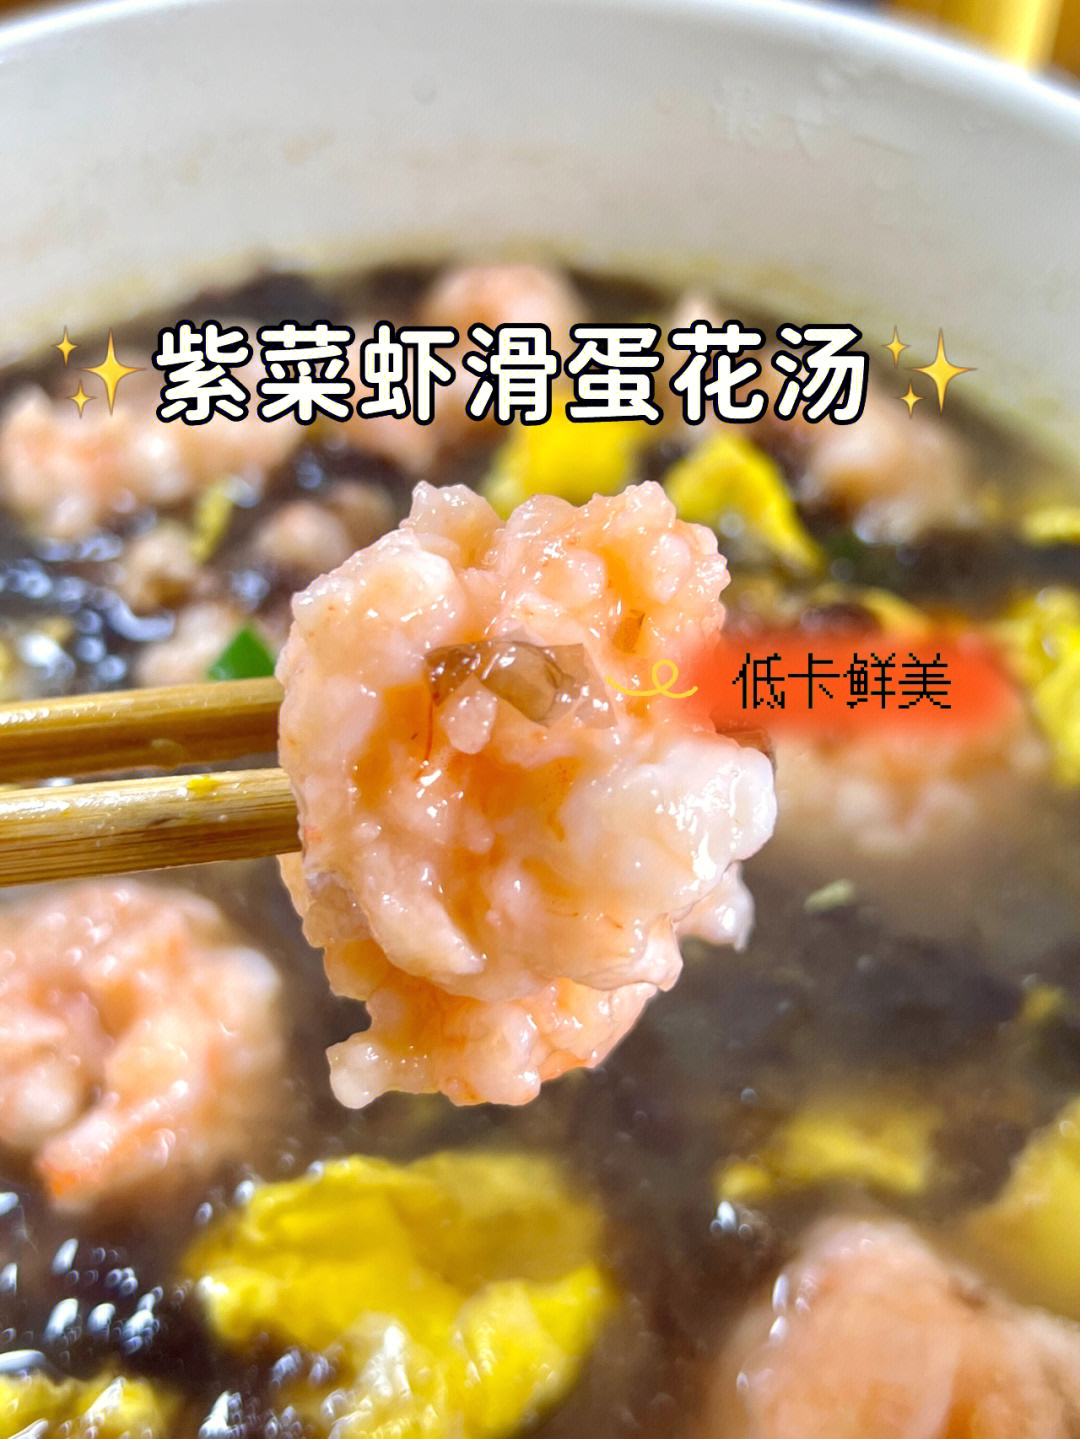 昨天煮的紫菜虾滑汤,特别受欢迎,鲜美好喝,做法又简单!